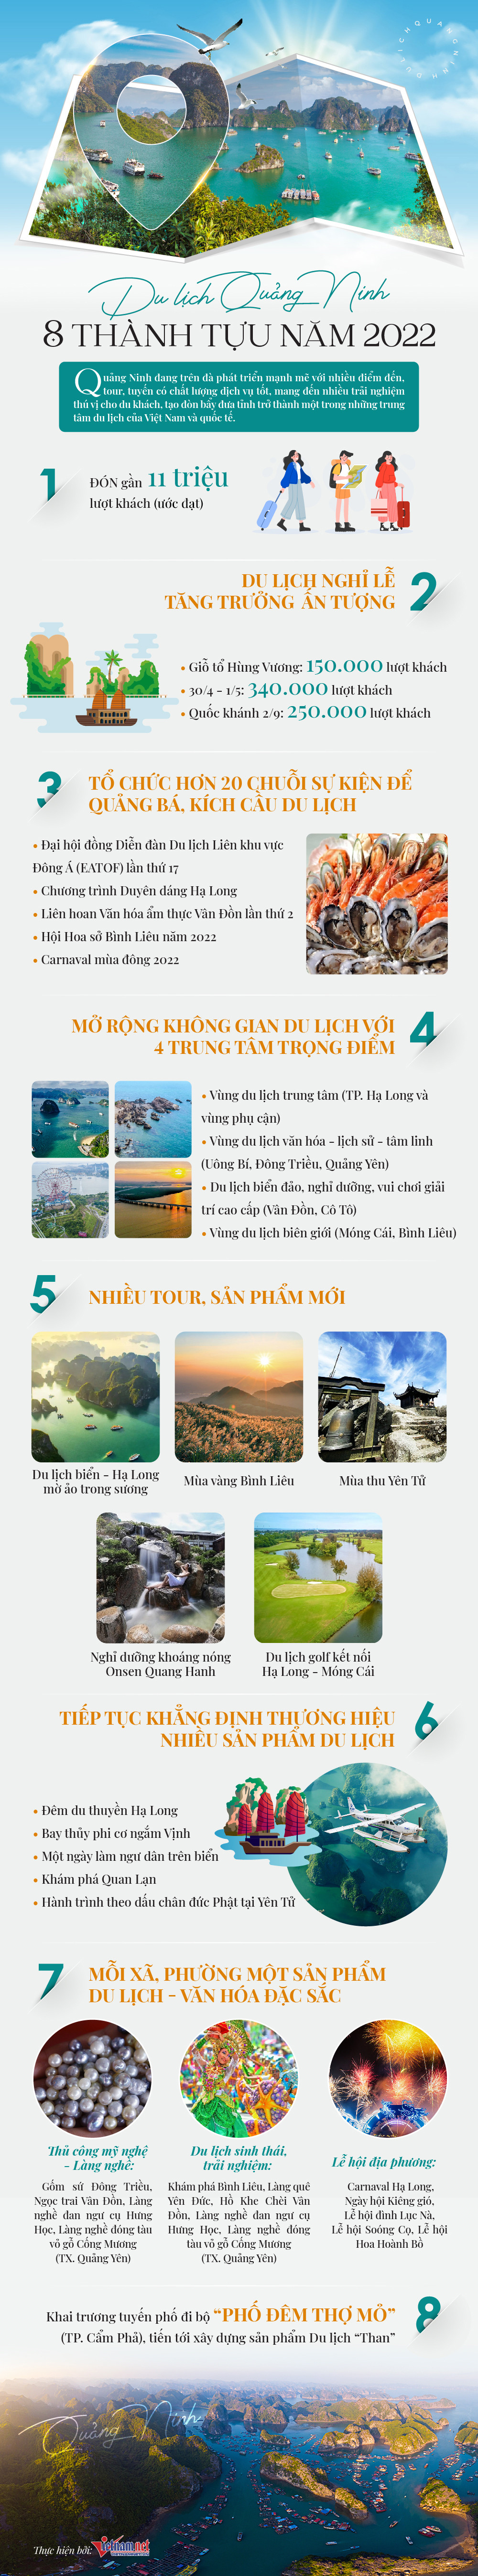 Du lịch Quảng Ninh: 8 thành tựu năm 2022